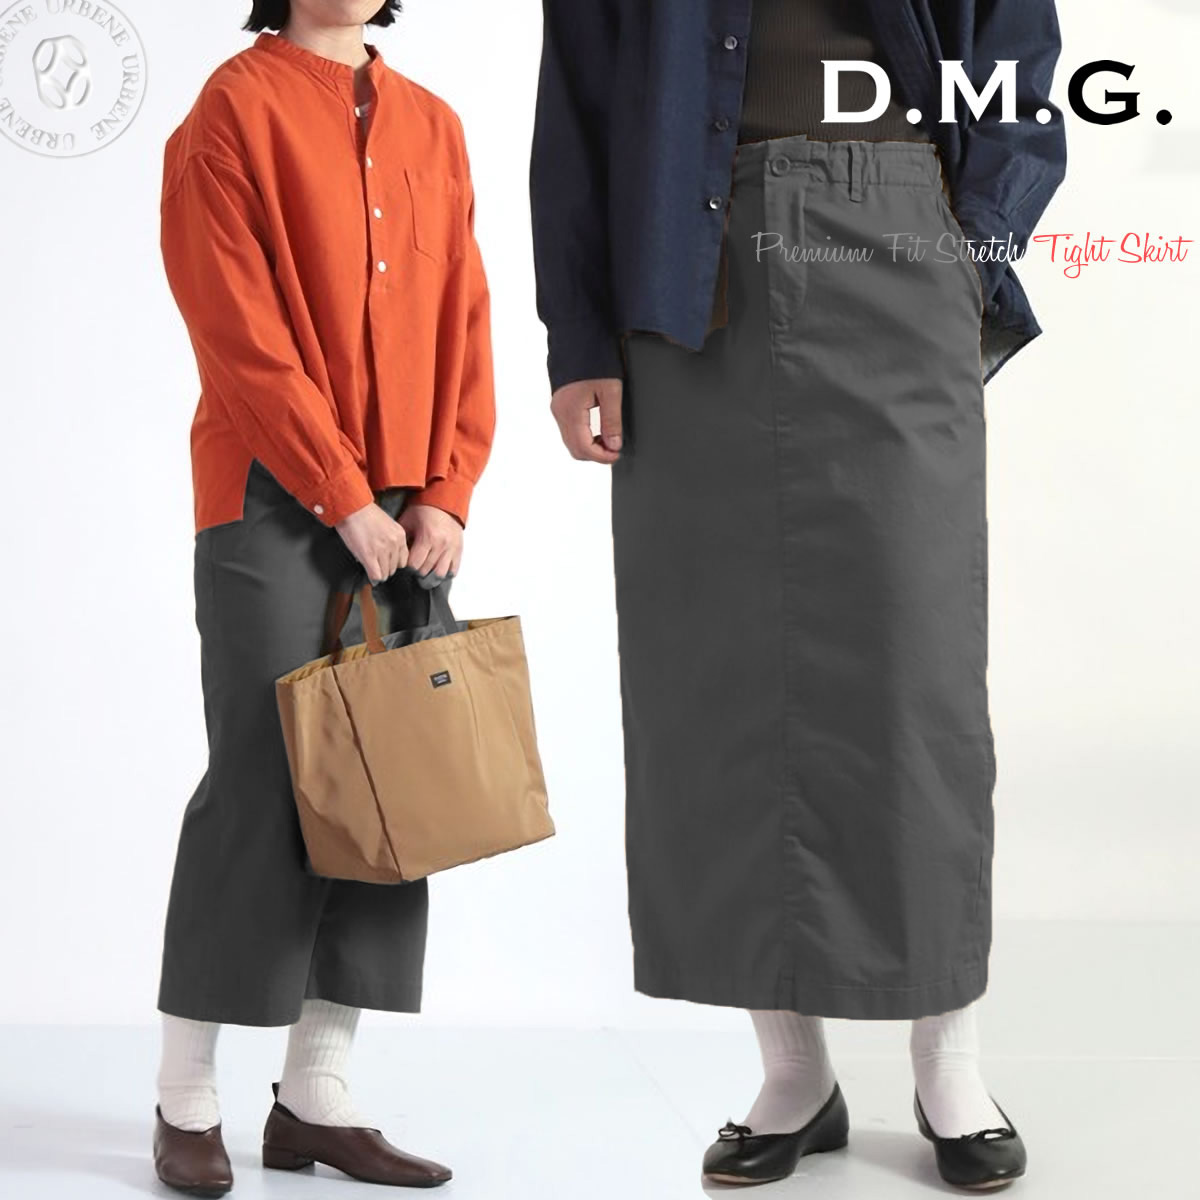 ドミンゴ スカート d.m.g ストレッチタイトスカート DMG プレミアム